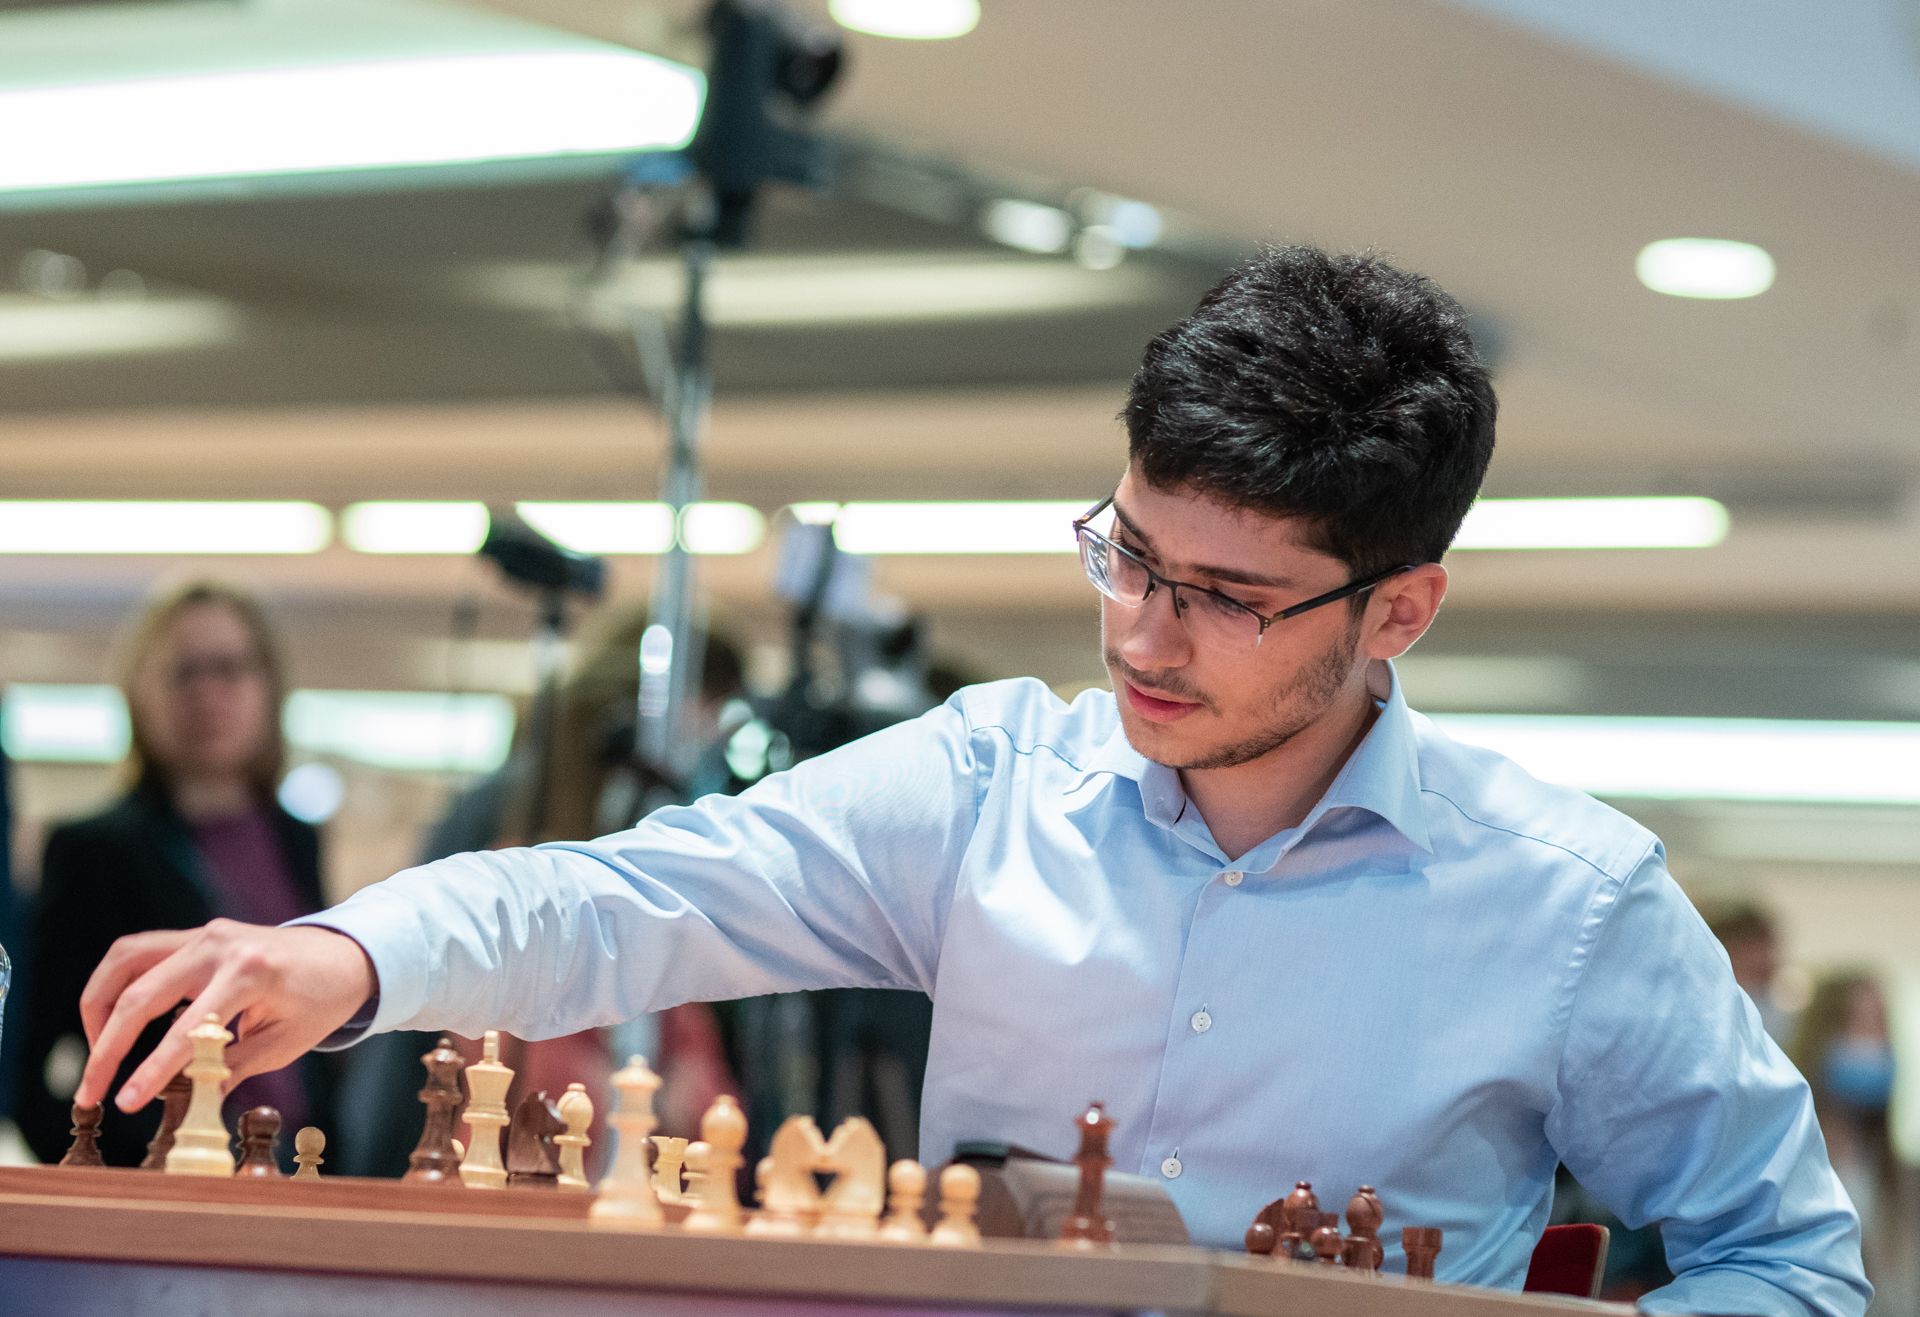 Uzbekistan's 15-year-old Sindarov beats Firouzja at Chess World Cup